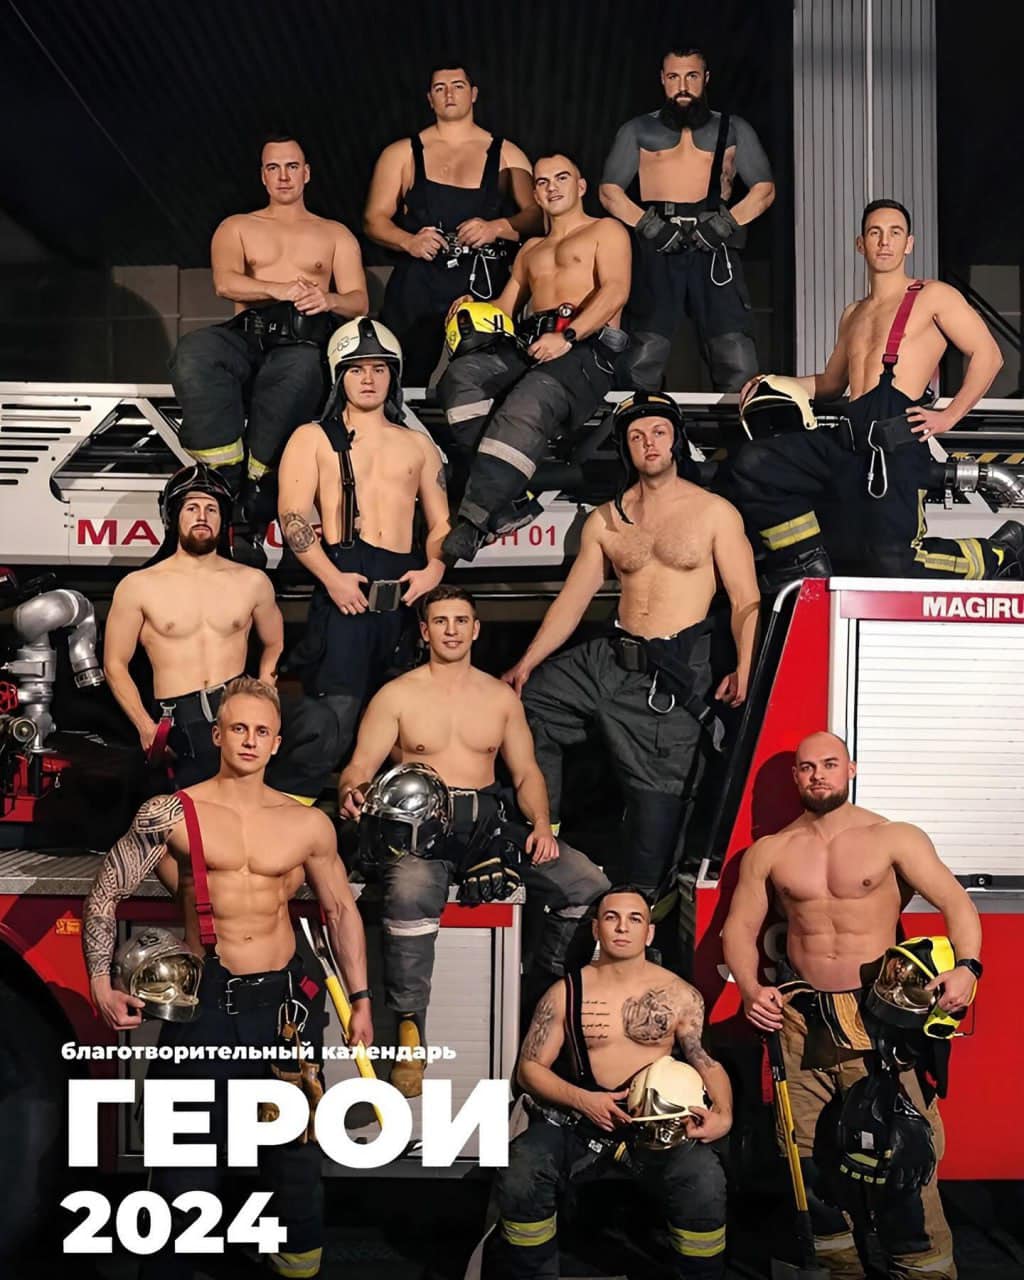 Благотворительный календарь с пожарными